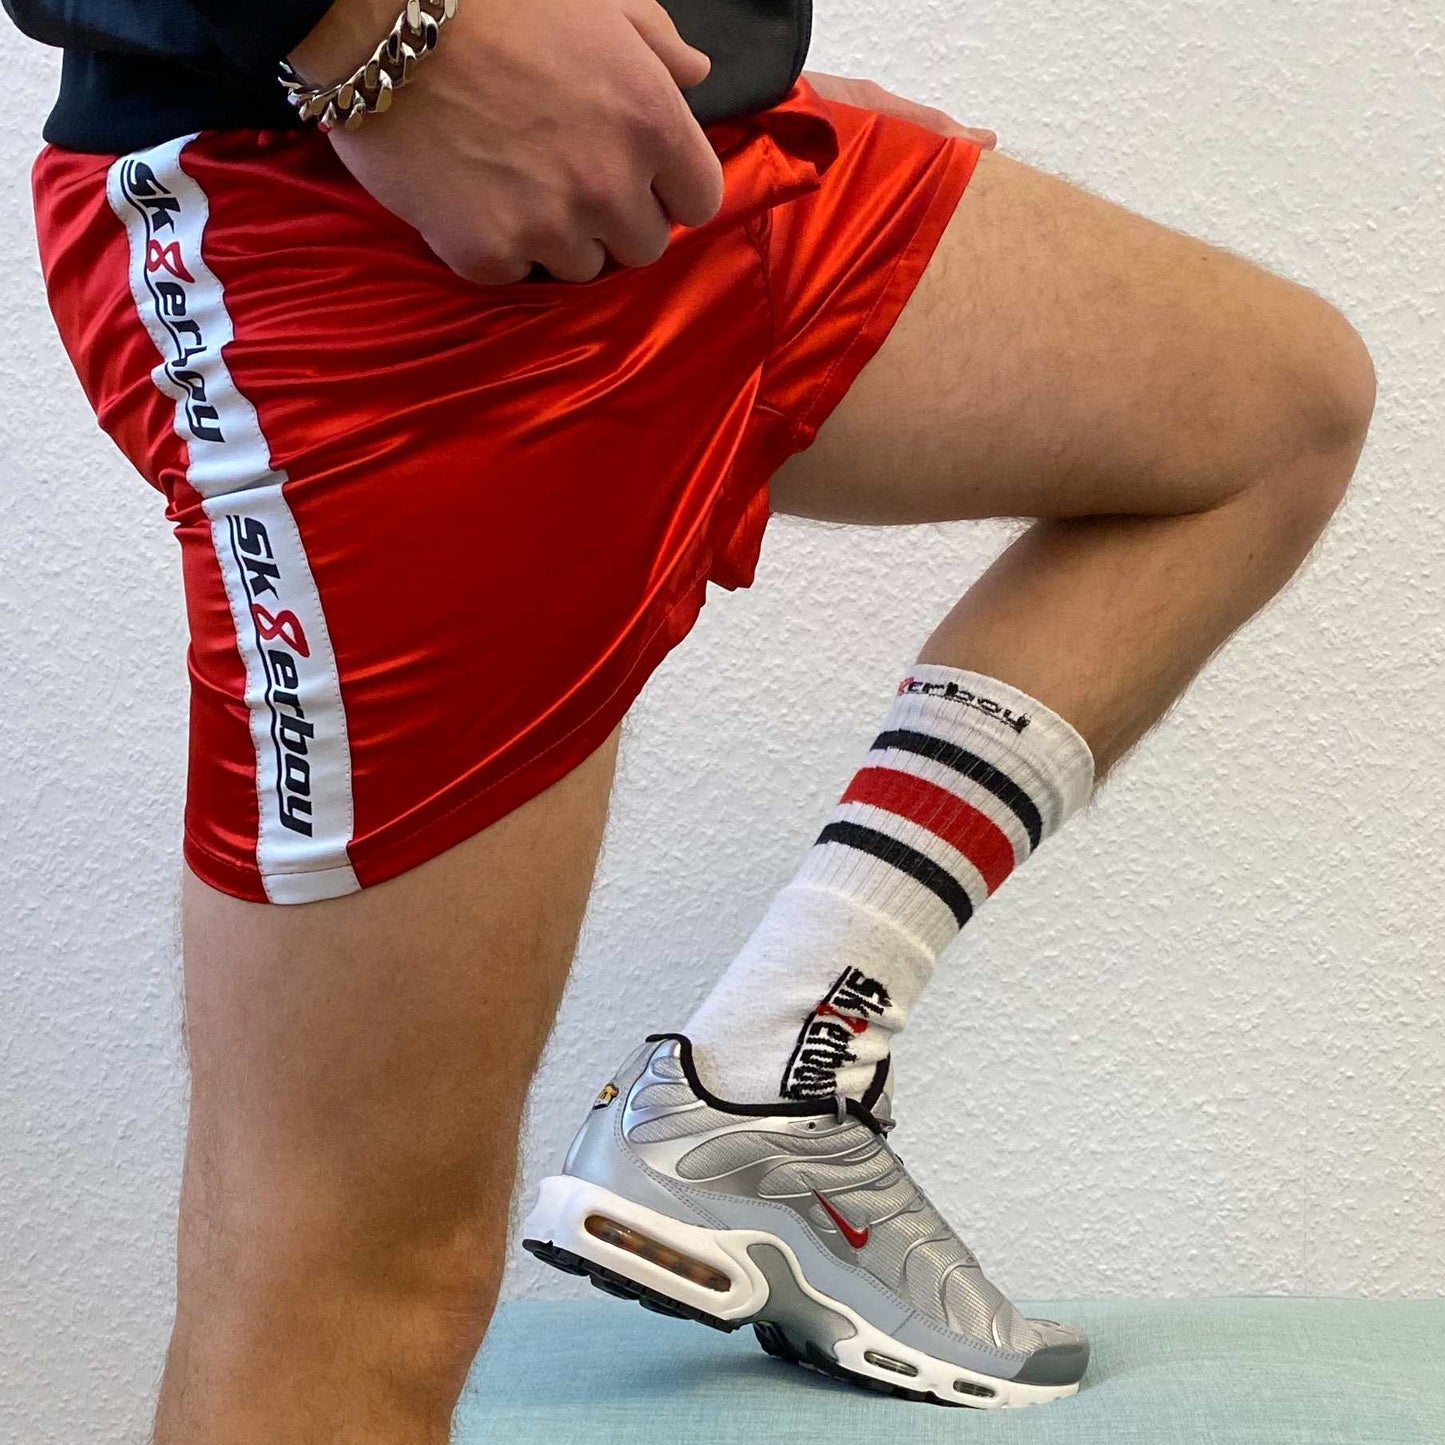 sportlicher typ mit nike tn sneaker in silver und sk8erboy tube socks zeigt seine beine und traegt eine rote boxer short in shiny red mit dicker armkette und shiny jacket